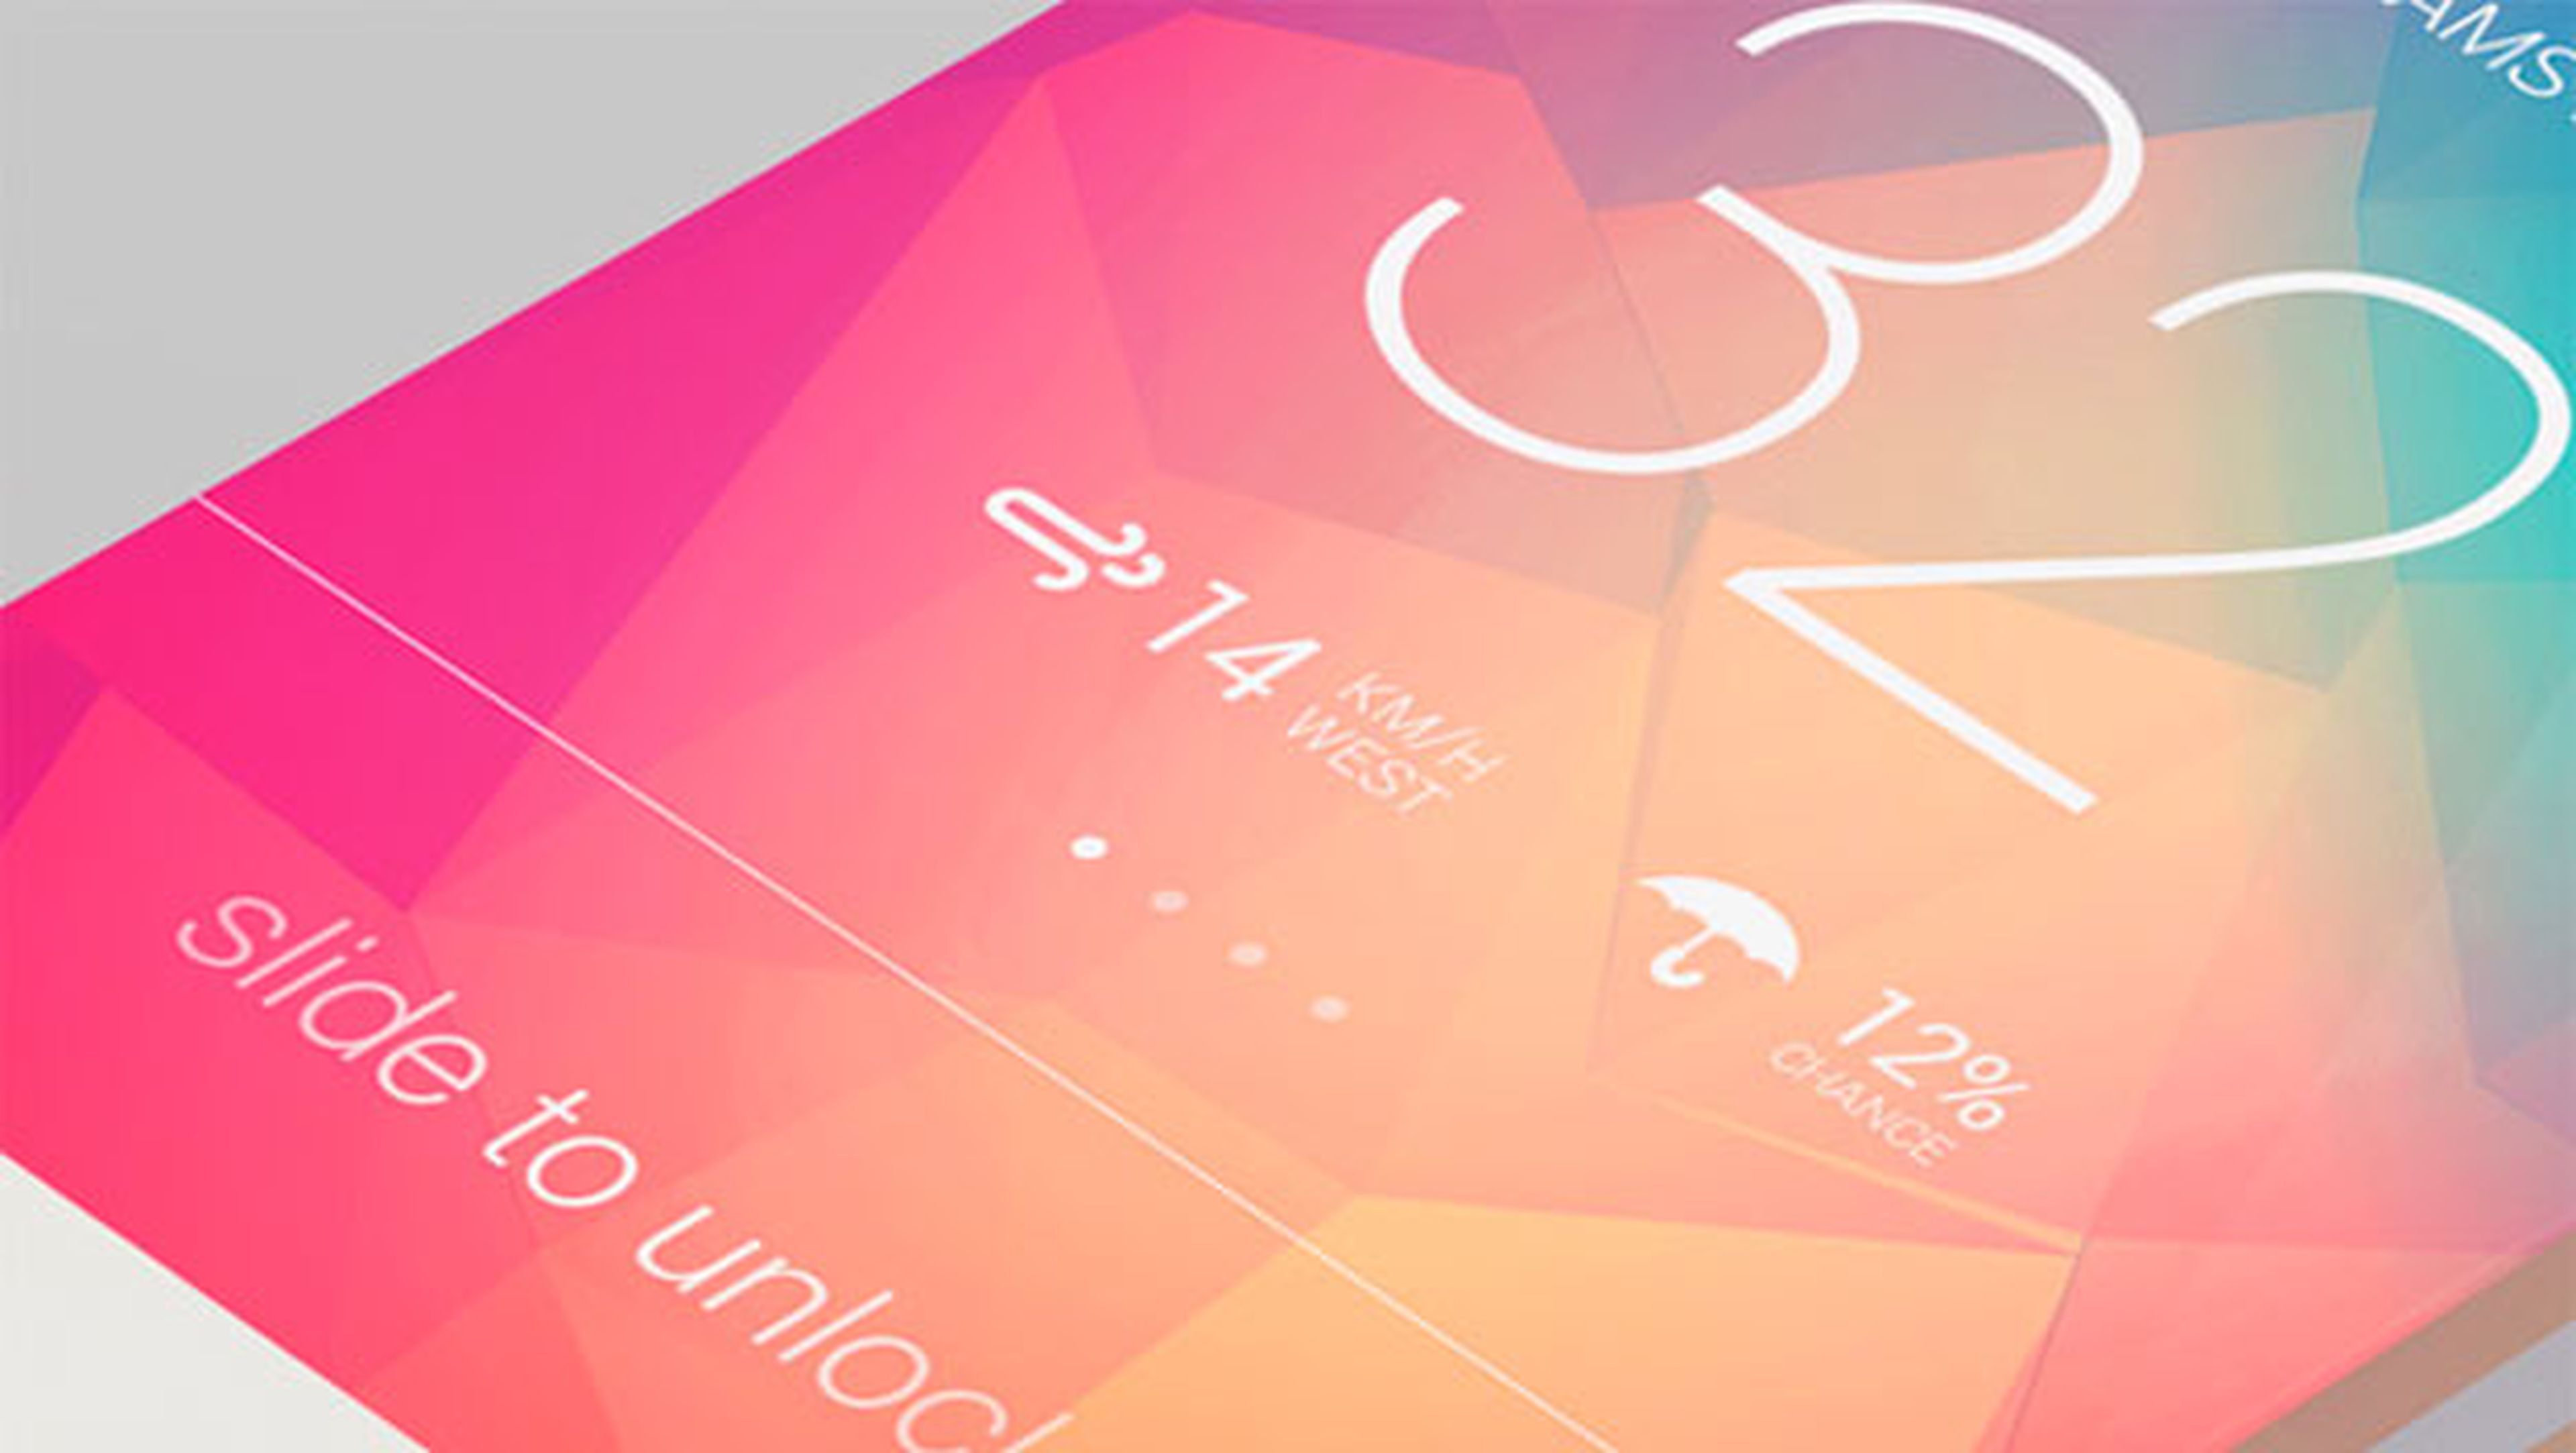 iPhone 6 incluirá sensores de temperatura, humedad y presión